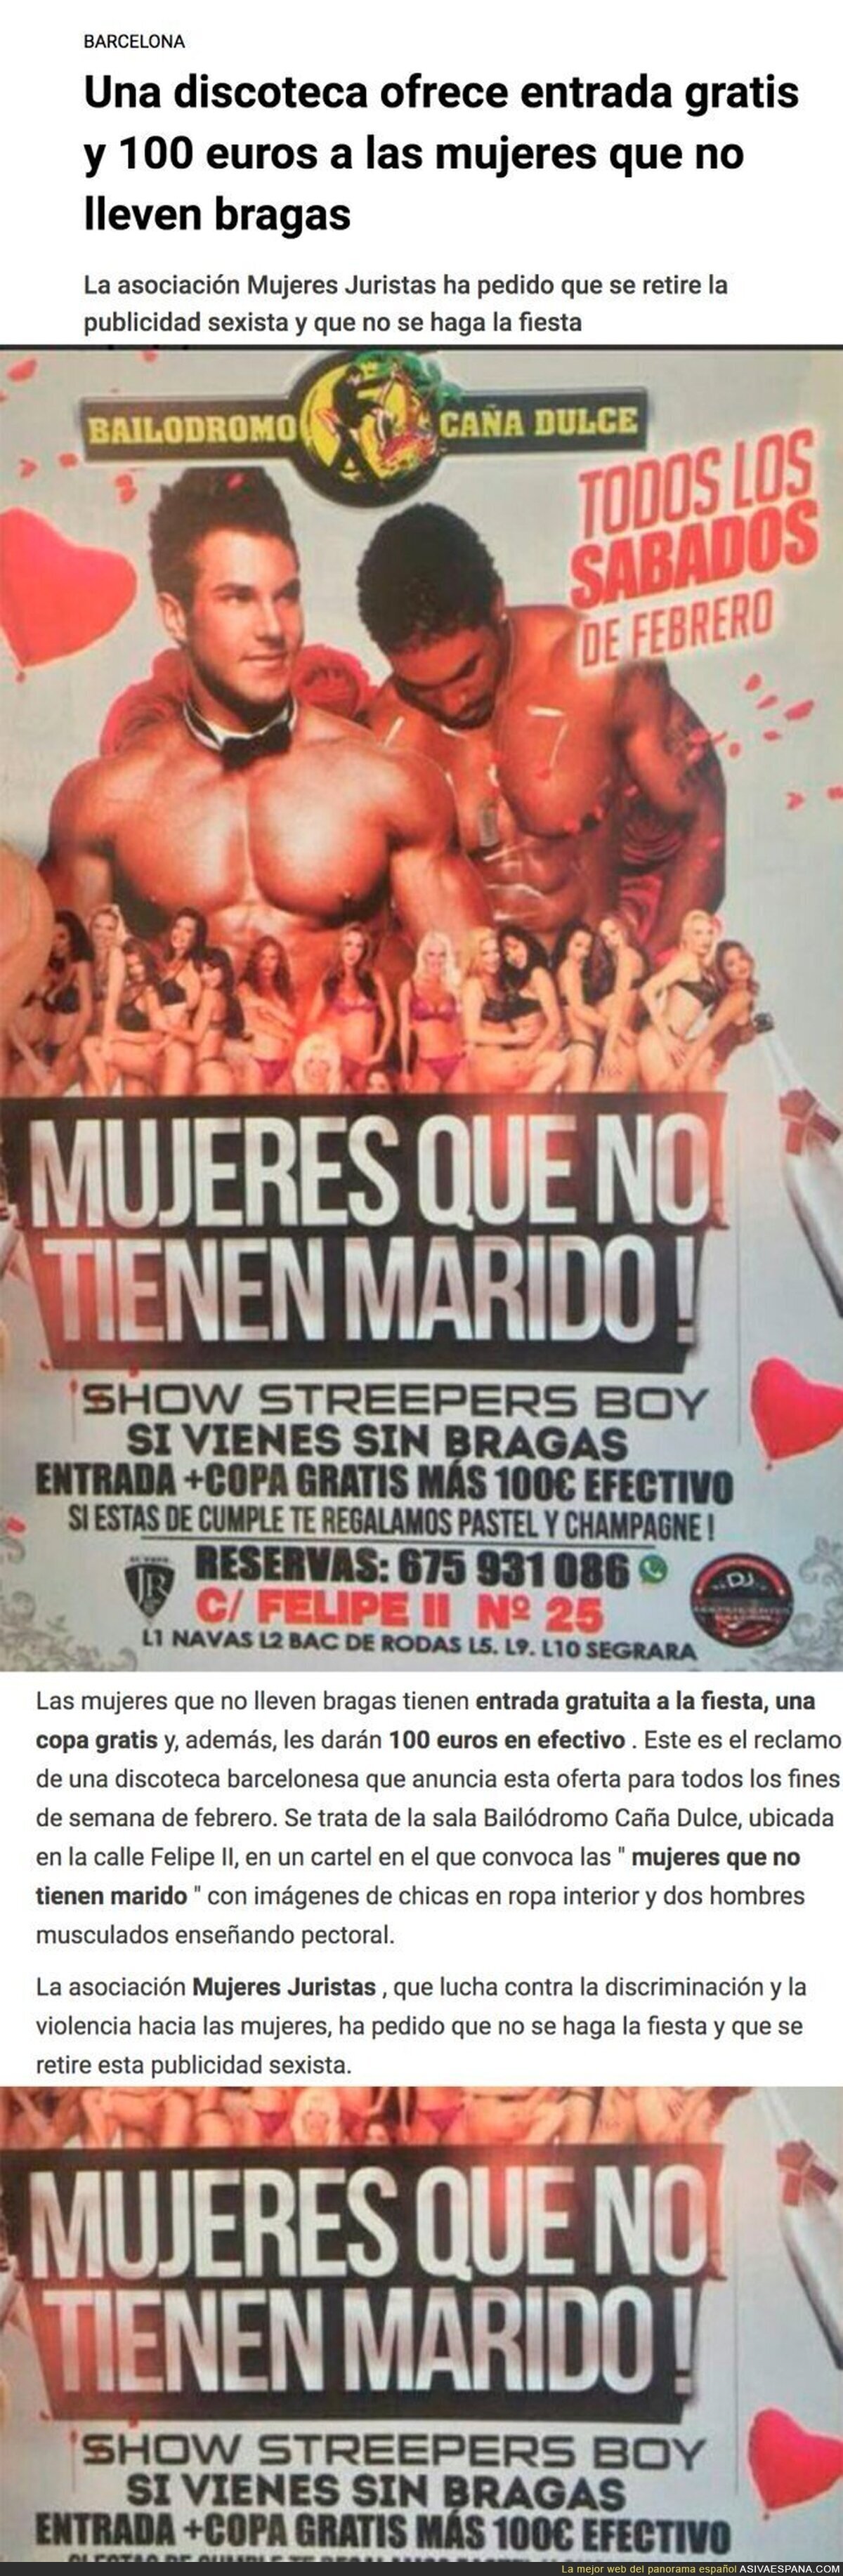 Polémico cartel de discoteca que ofrece entrada gratis y 100€ a las mujeres que no lleven bragas